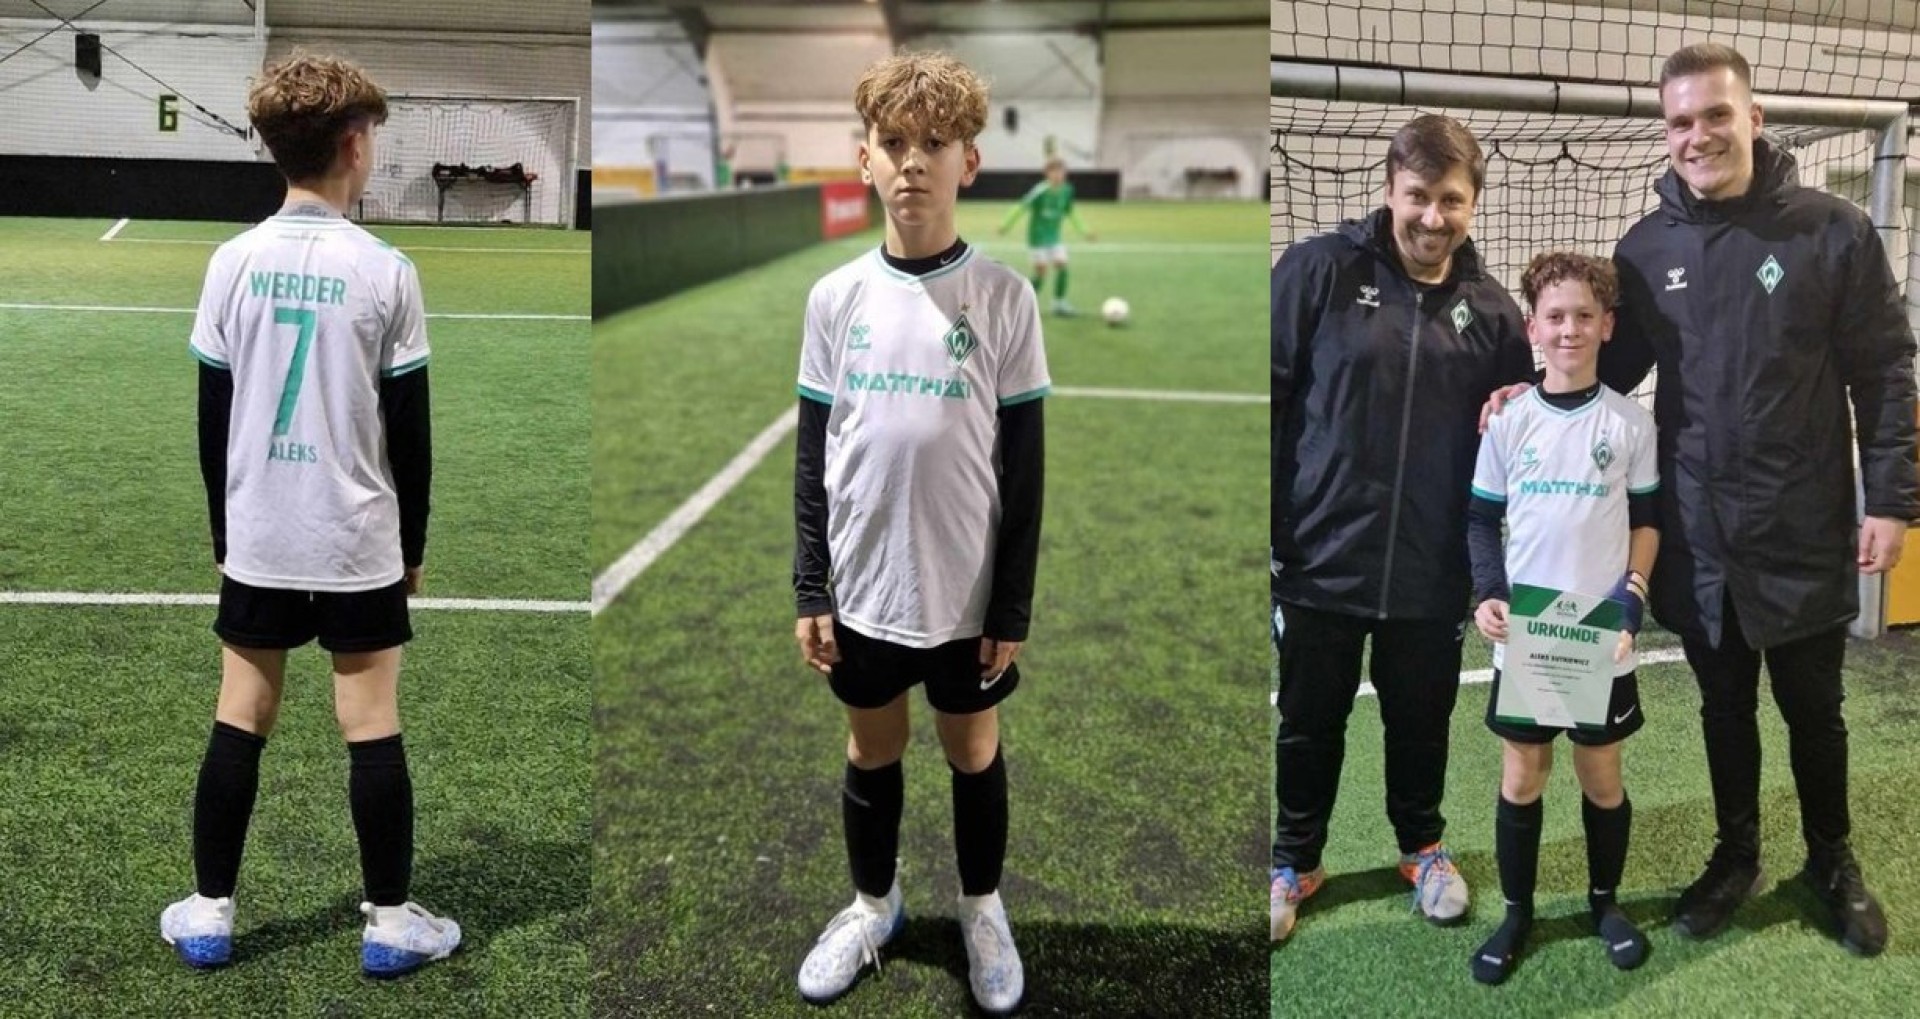 Poznajcie Aleksa. 10-letni piłkarz został powołany do kadry drużyny ,,Talentteam WESER ELBE &quot; Werder Bremen.